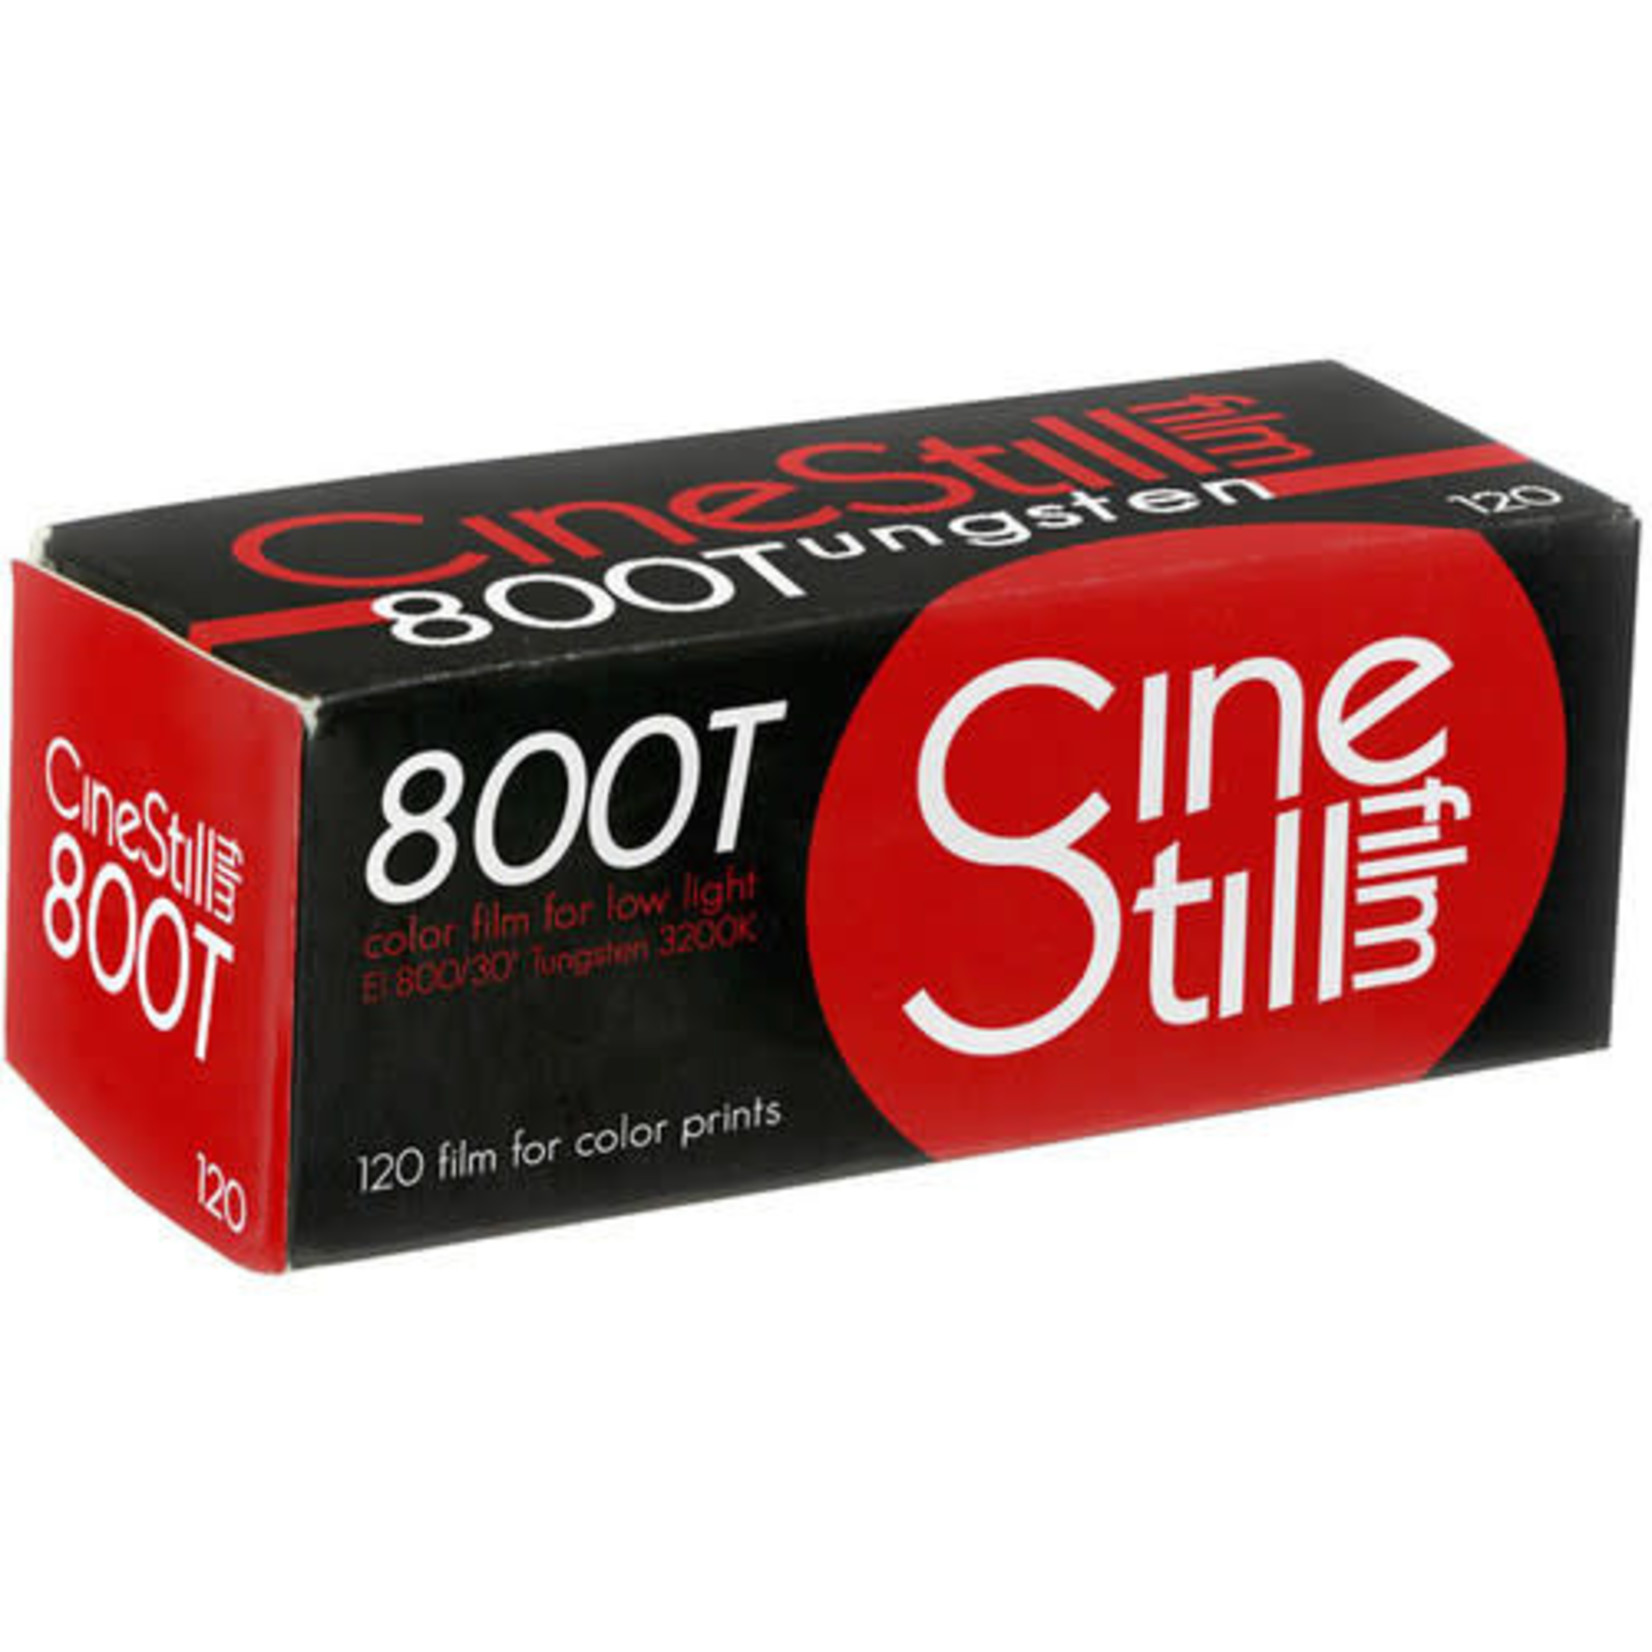 CineStill CineStill Film 800Tungsten Xpro C-41 Color Negative Film (120 Roll Film)